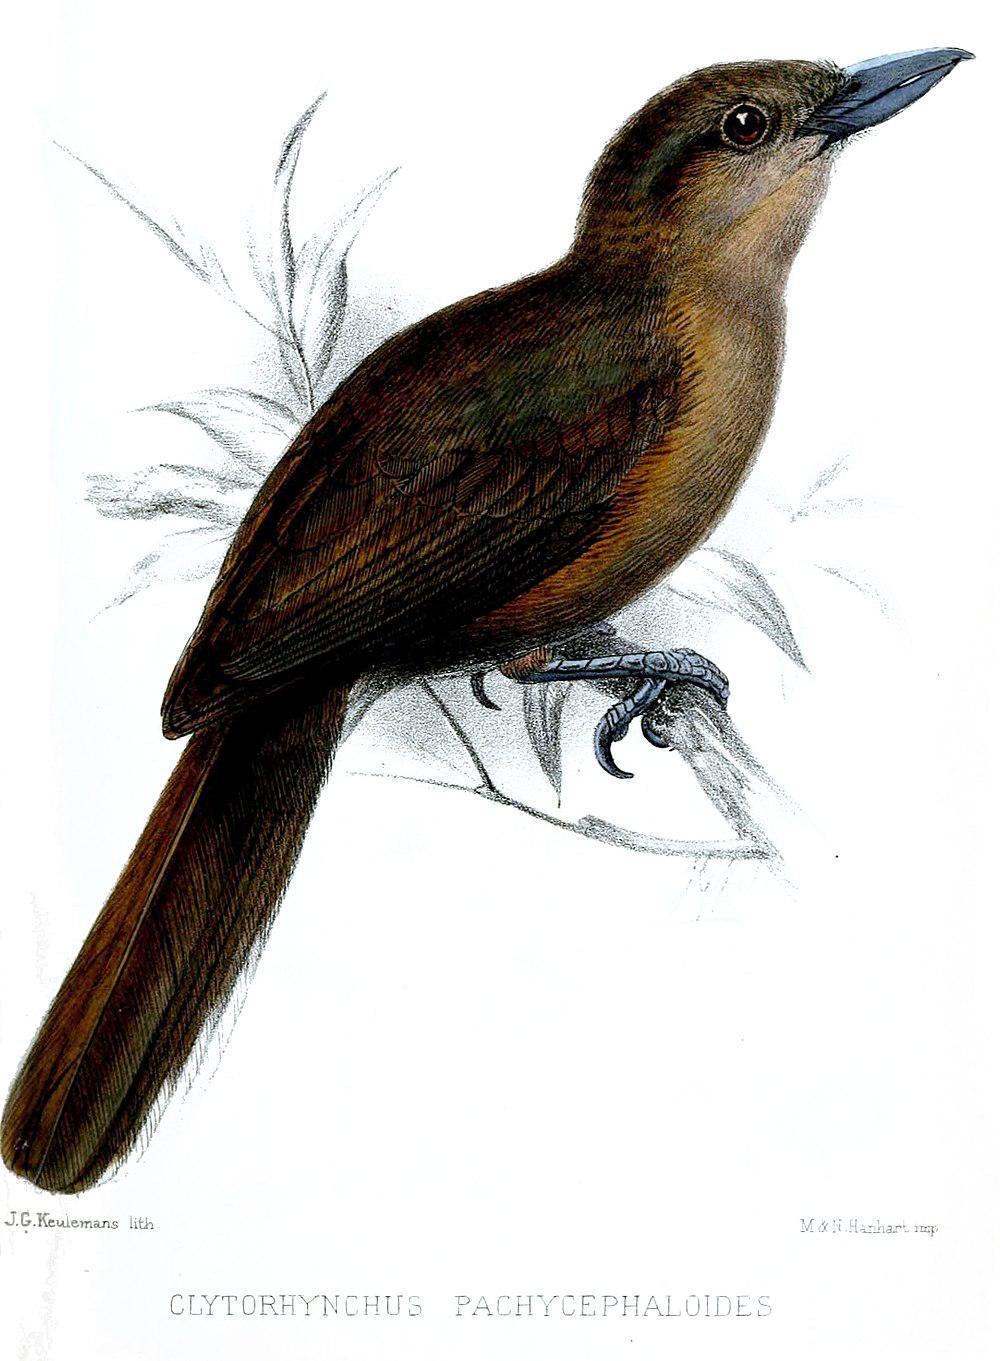 南鵙嘴鹟 / Southern Shrikebill / Clytorhynchus pachycephaloides